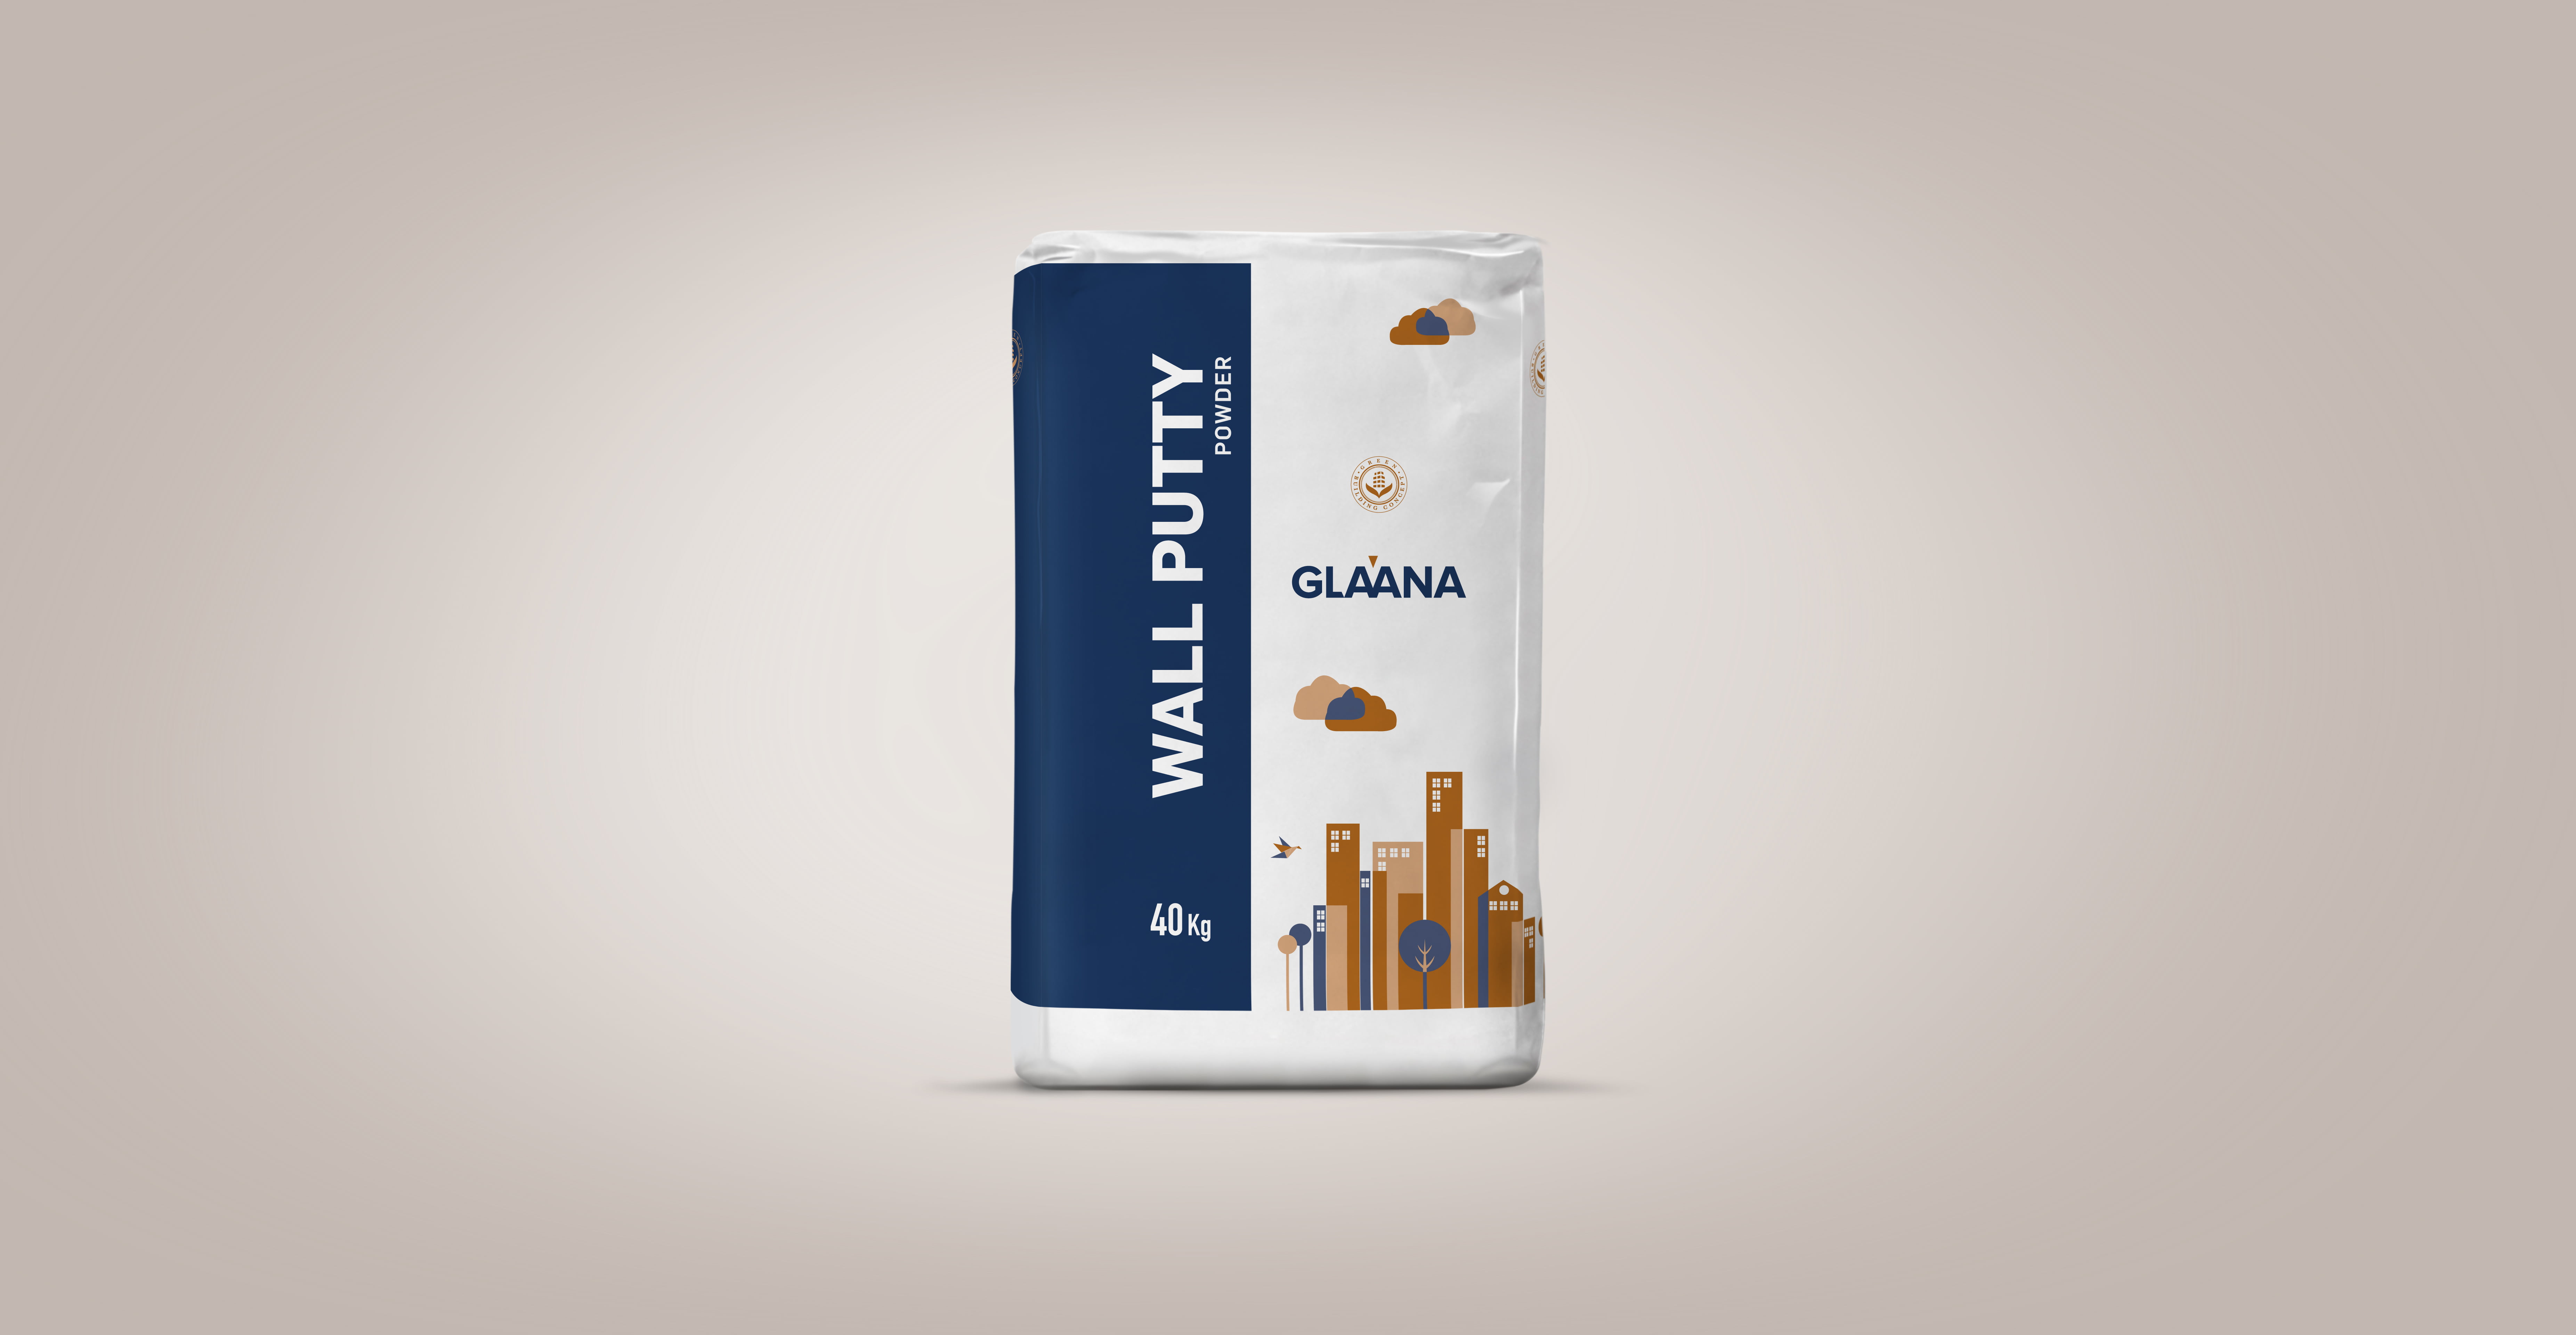 Glaana packaging design-Wallputty powder